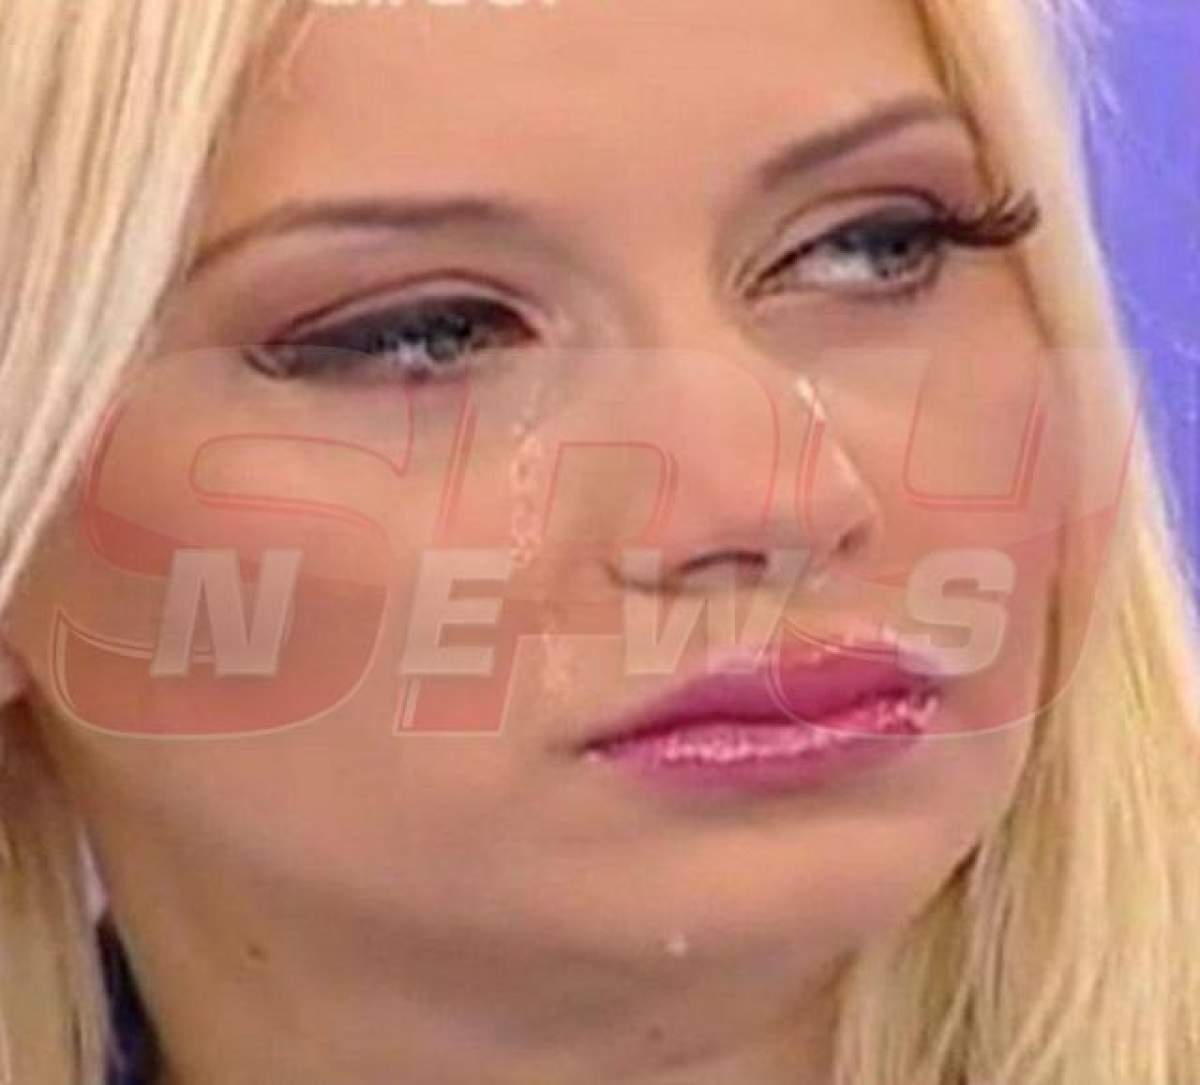 Simona Traşcă rupe tăcerea în dosarul ”Prostituție în showbiz”! Este prima care spune totul despre acuzațiile aduse